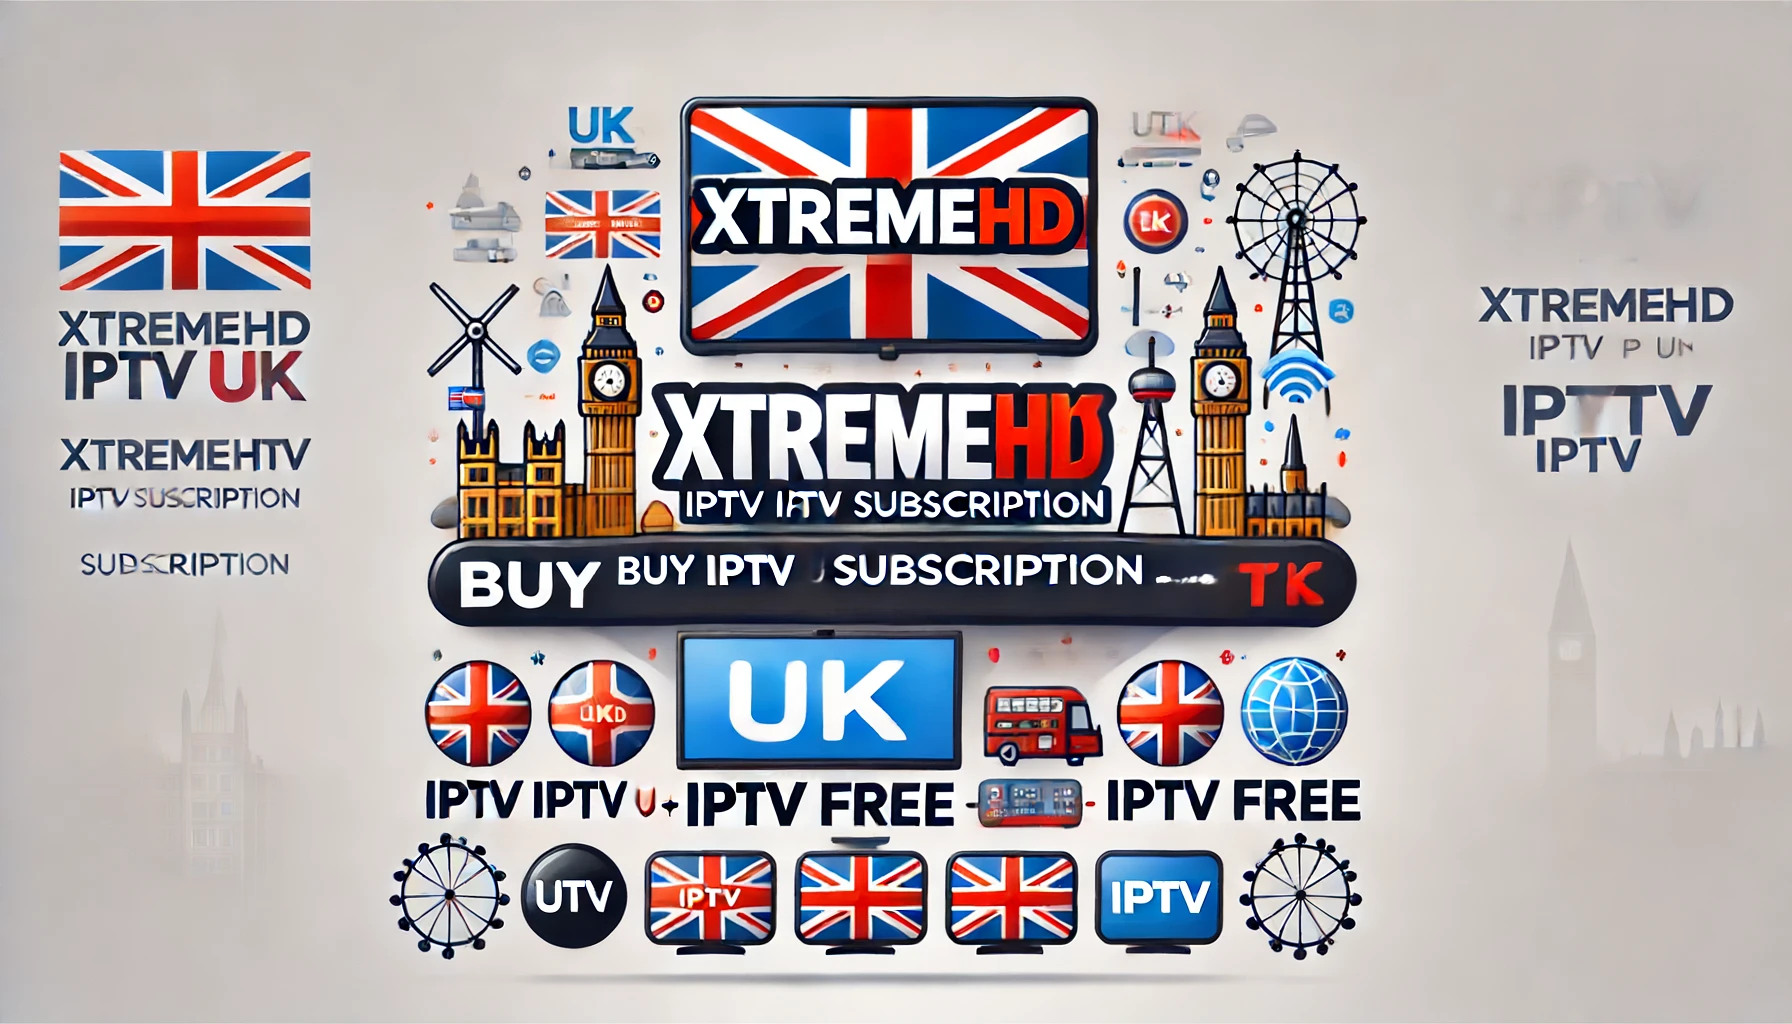 XtremeHD IPTV UK